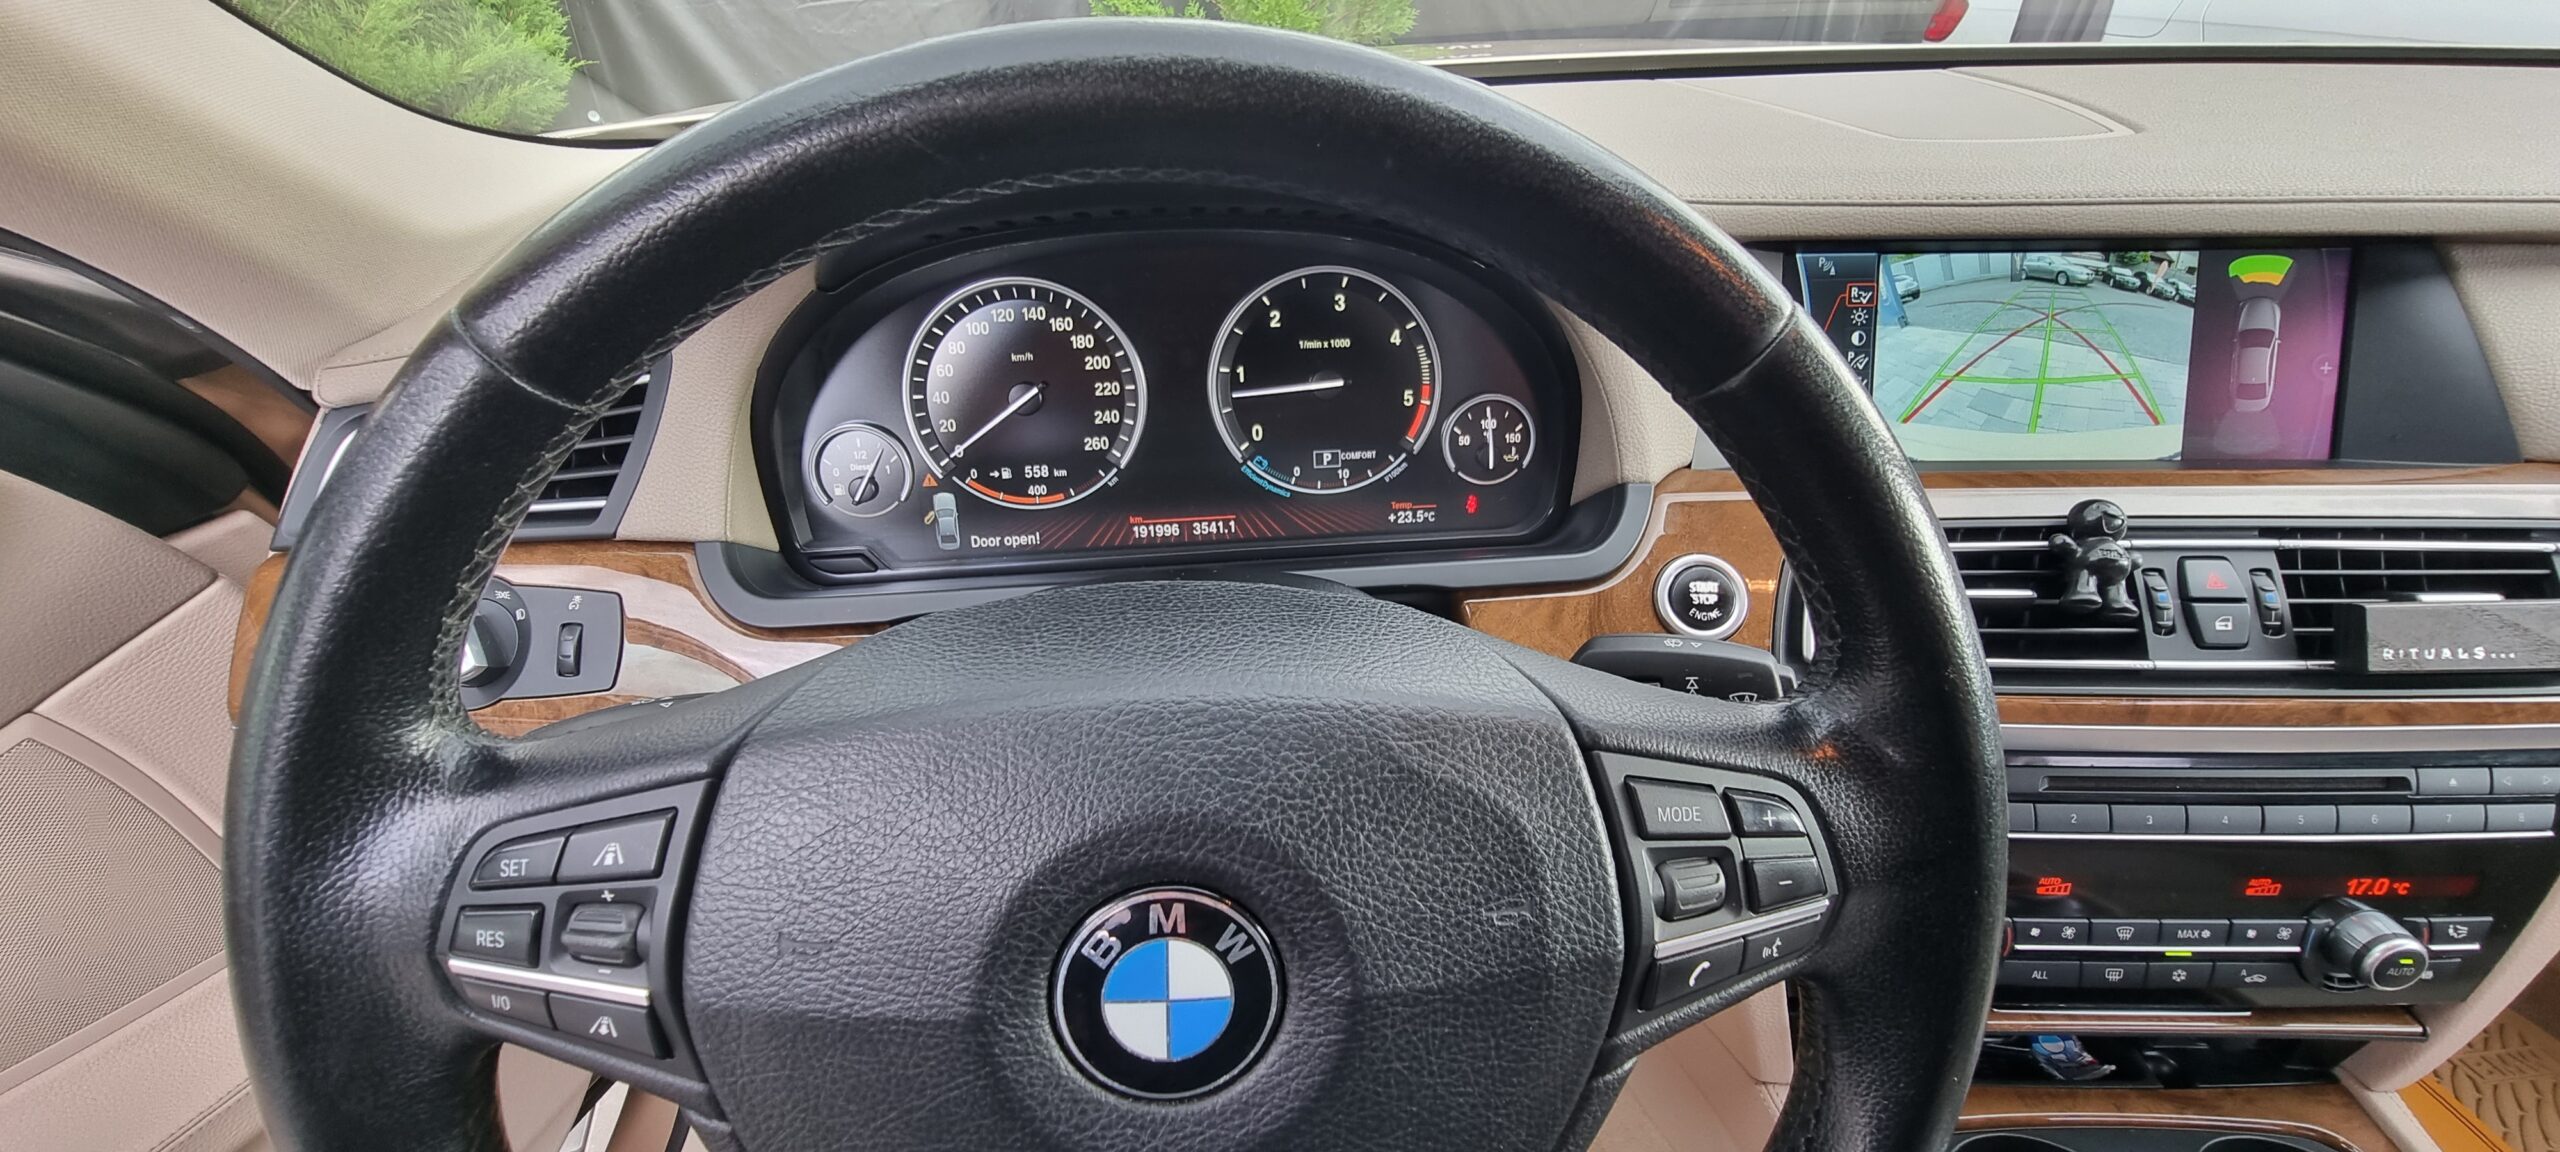 BMW SERIA 7, 3.0 DIESEL ,245 CP, EURO 5, AN 2011